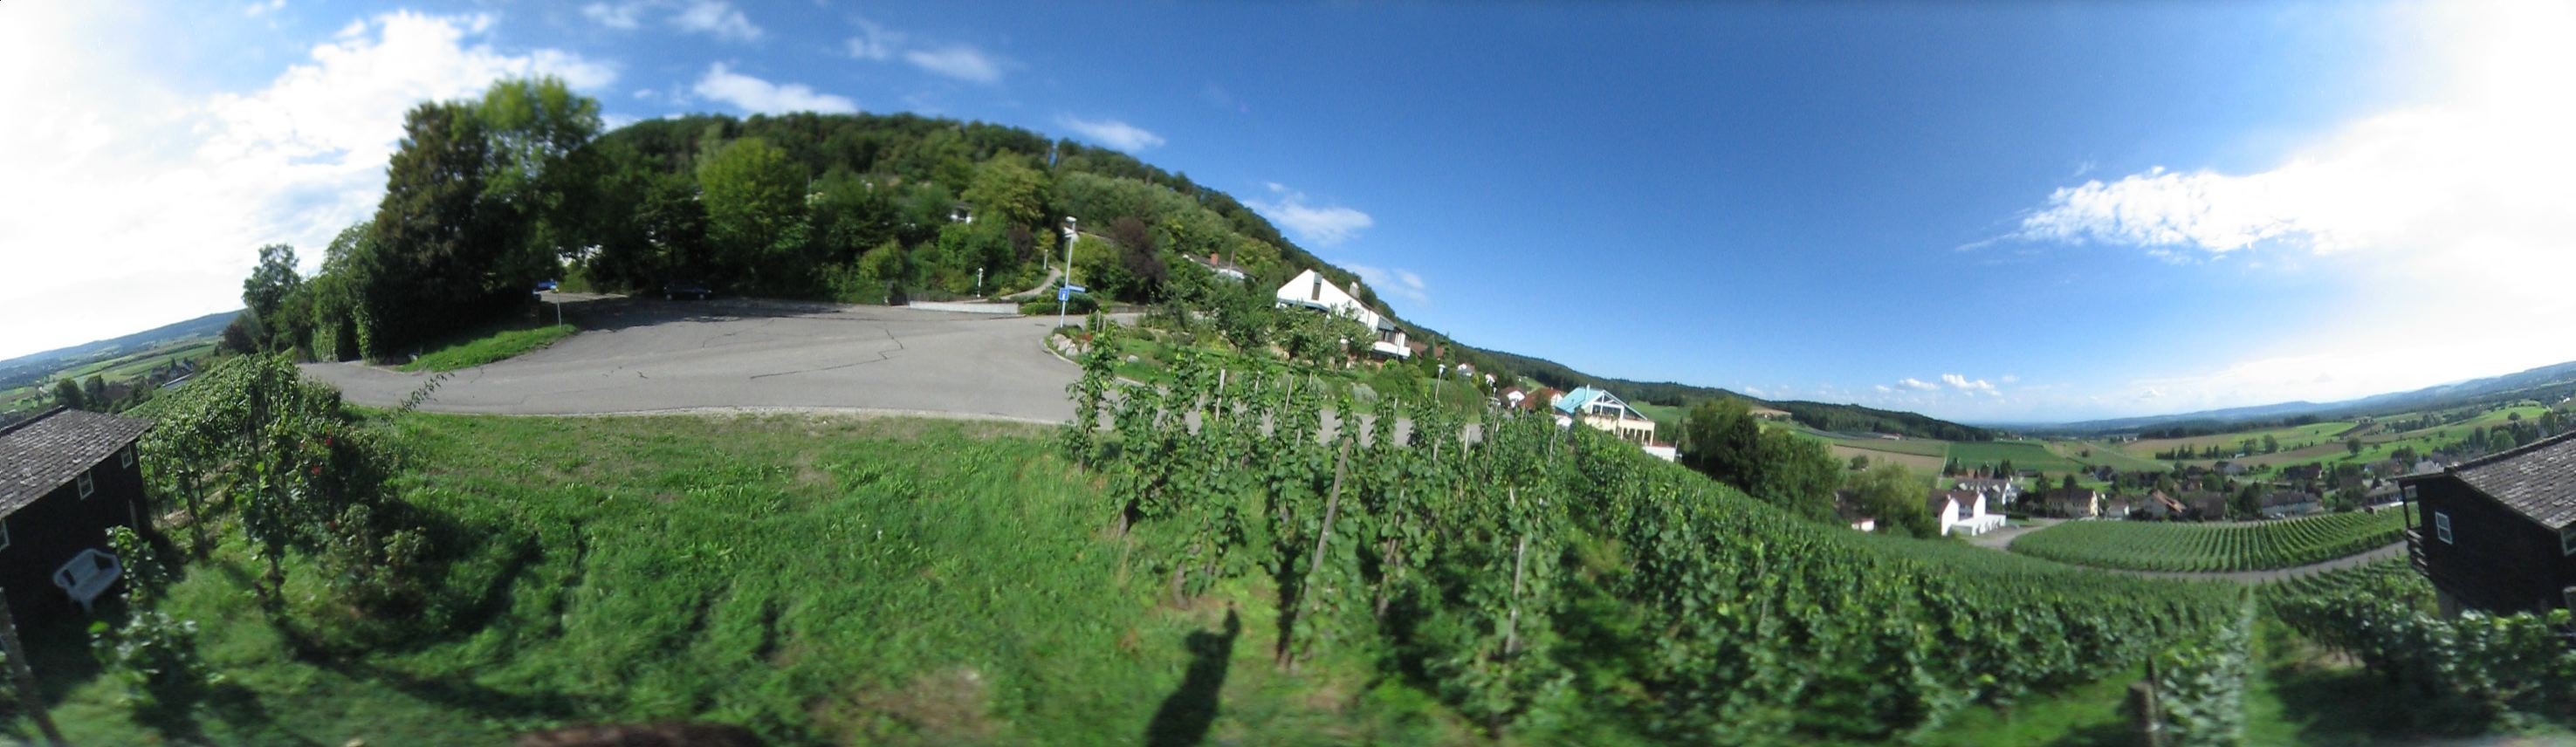 Weinreben in Uhwiesen. Zuercher Weinland.